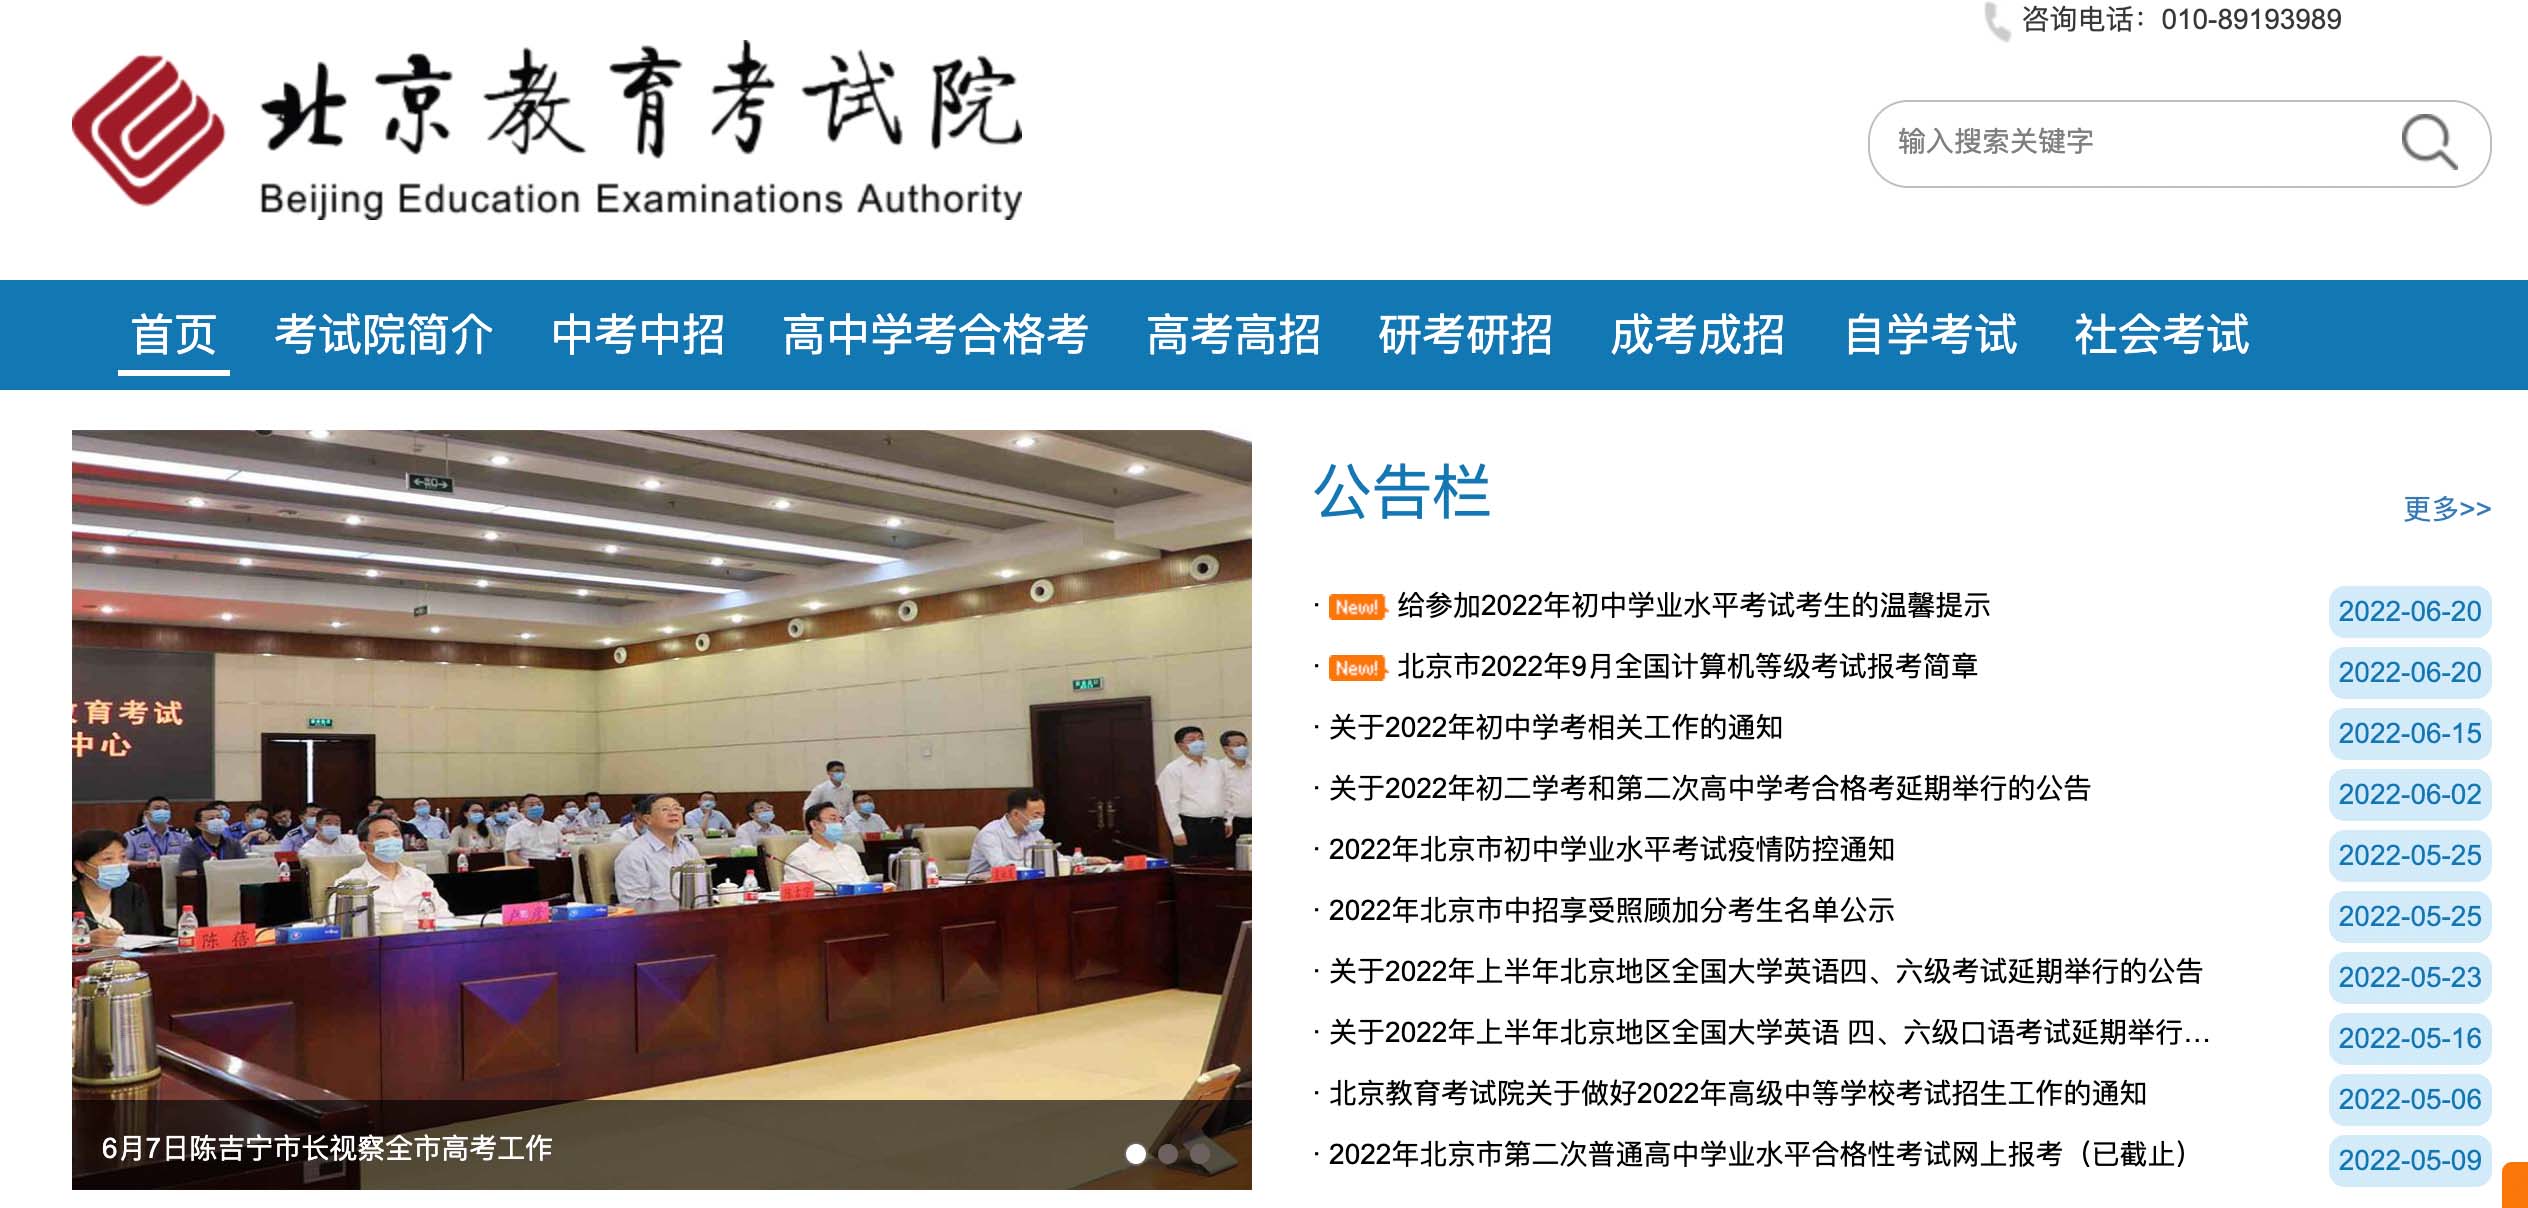 2022年北京高考志愿填报入口北京教育考试院网站